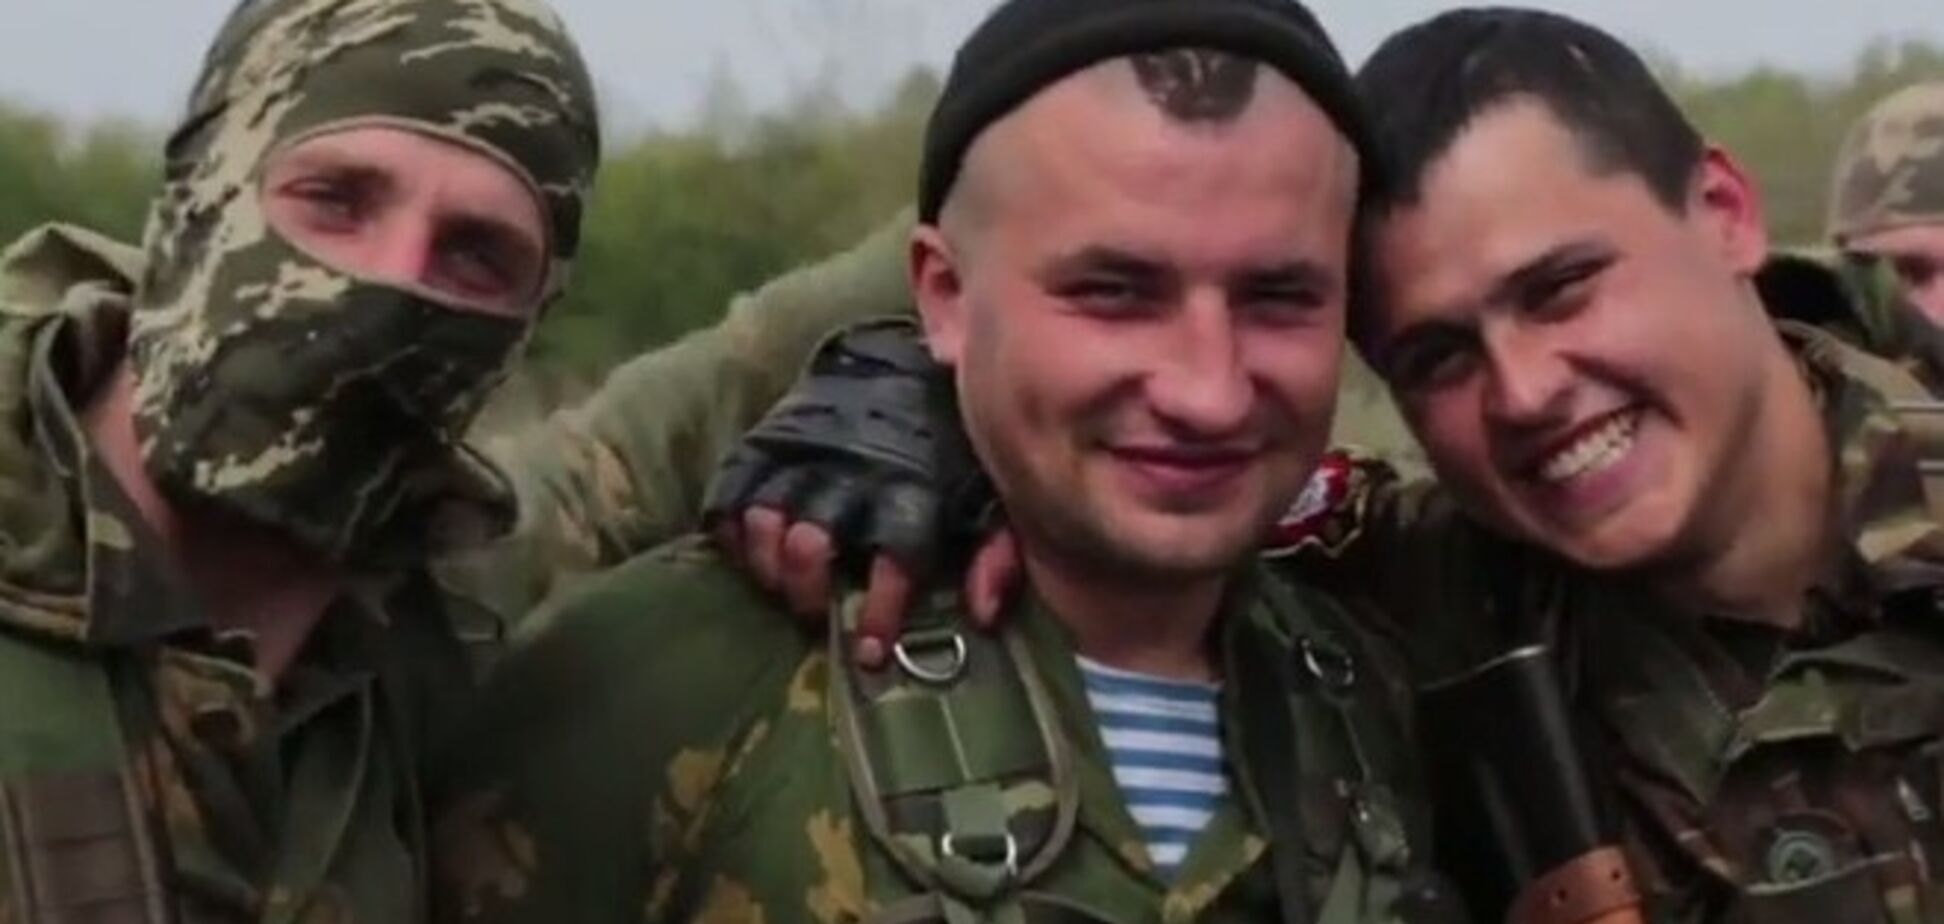 Ми готові загинути за свою землю - українські воїни